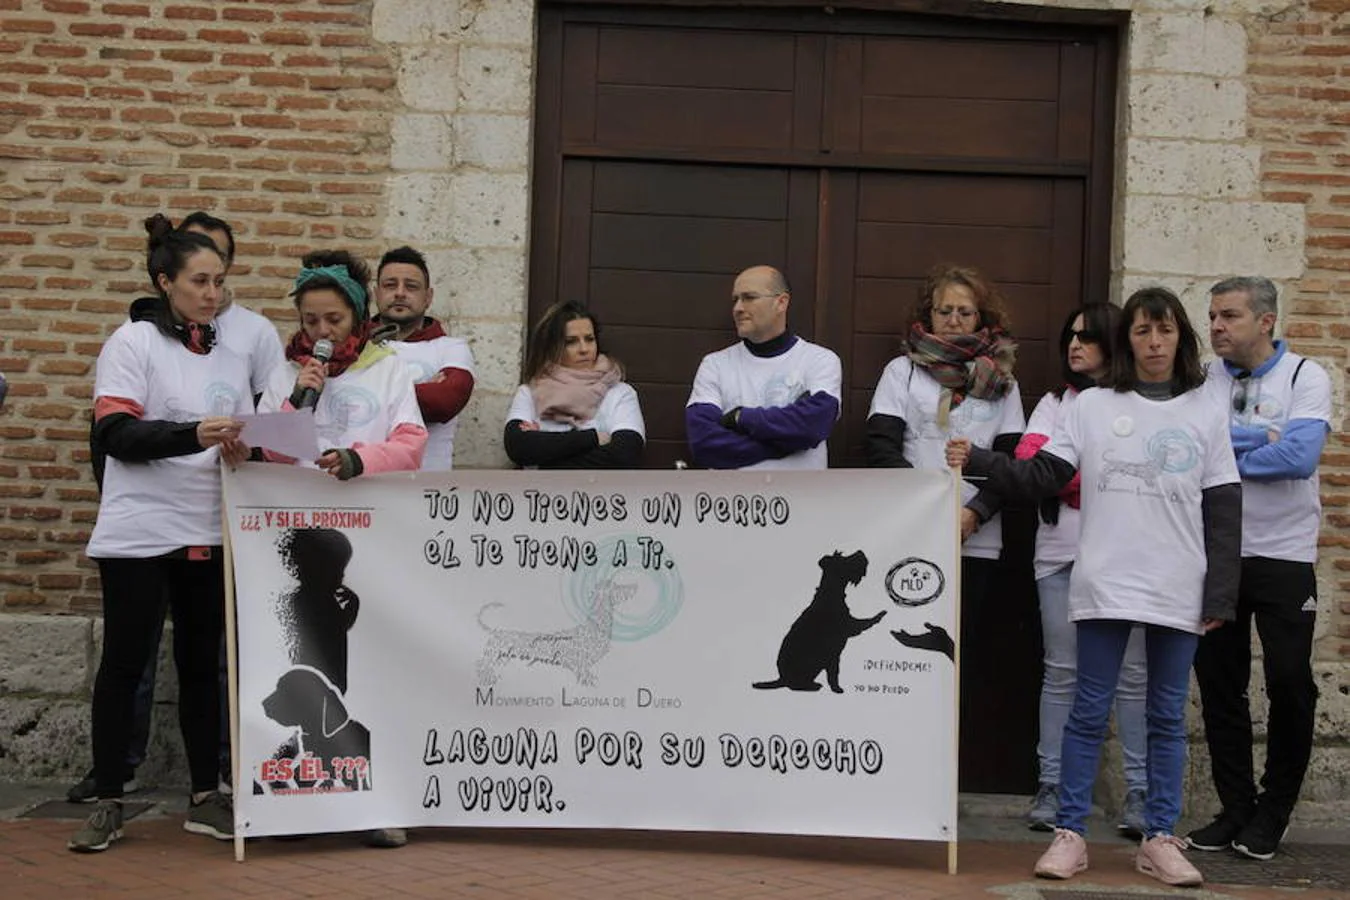 Más de un millar de personas se manifestaron ayer en Laguna de Duero contra el envenenamiento de perros, que se se registra desde hace unos años en parques públicos y zonas caninas del municipio.